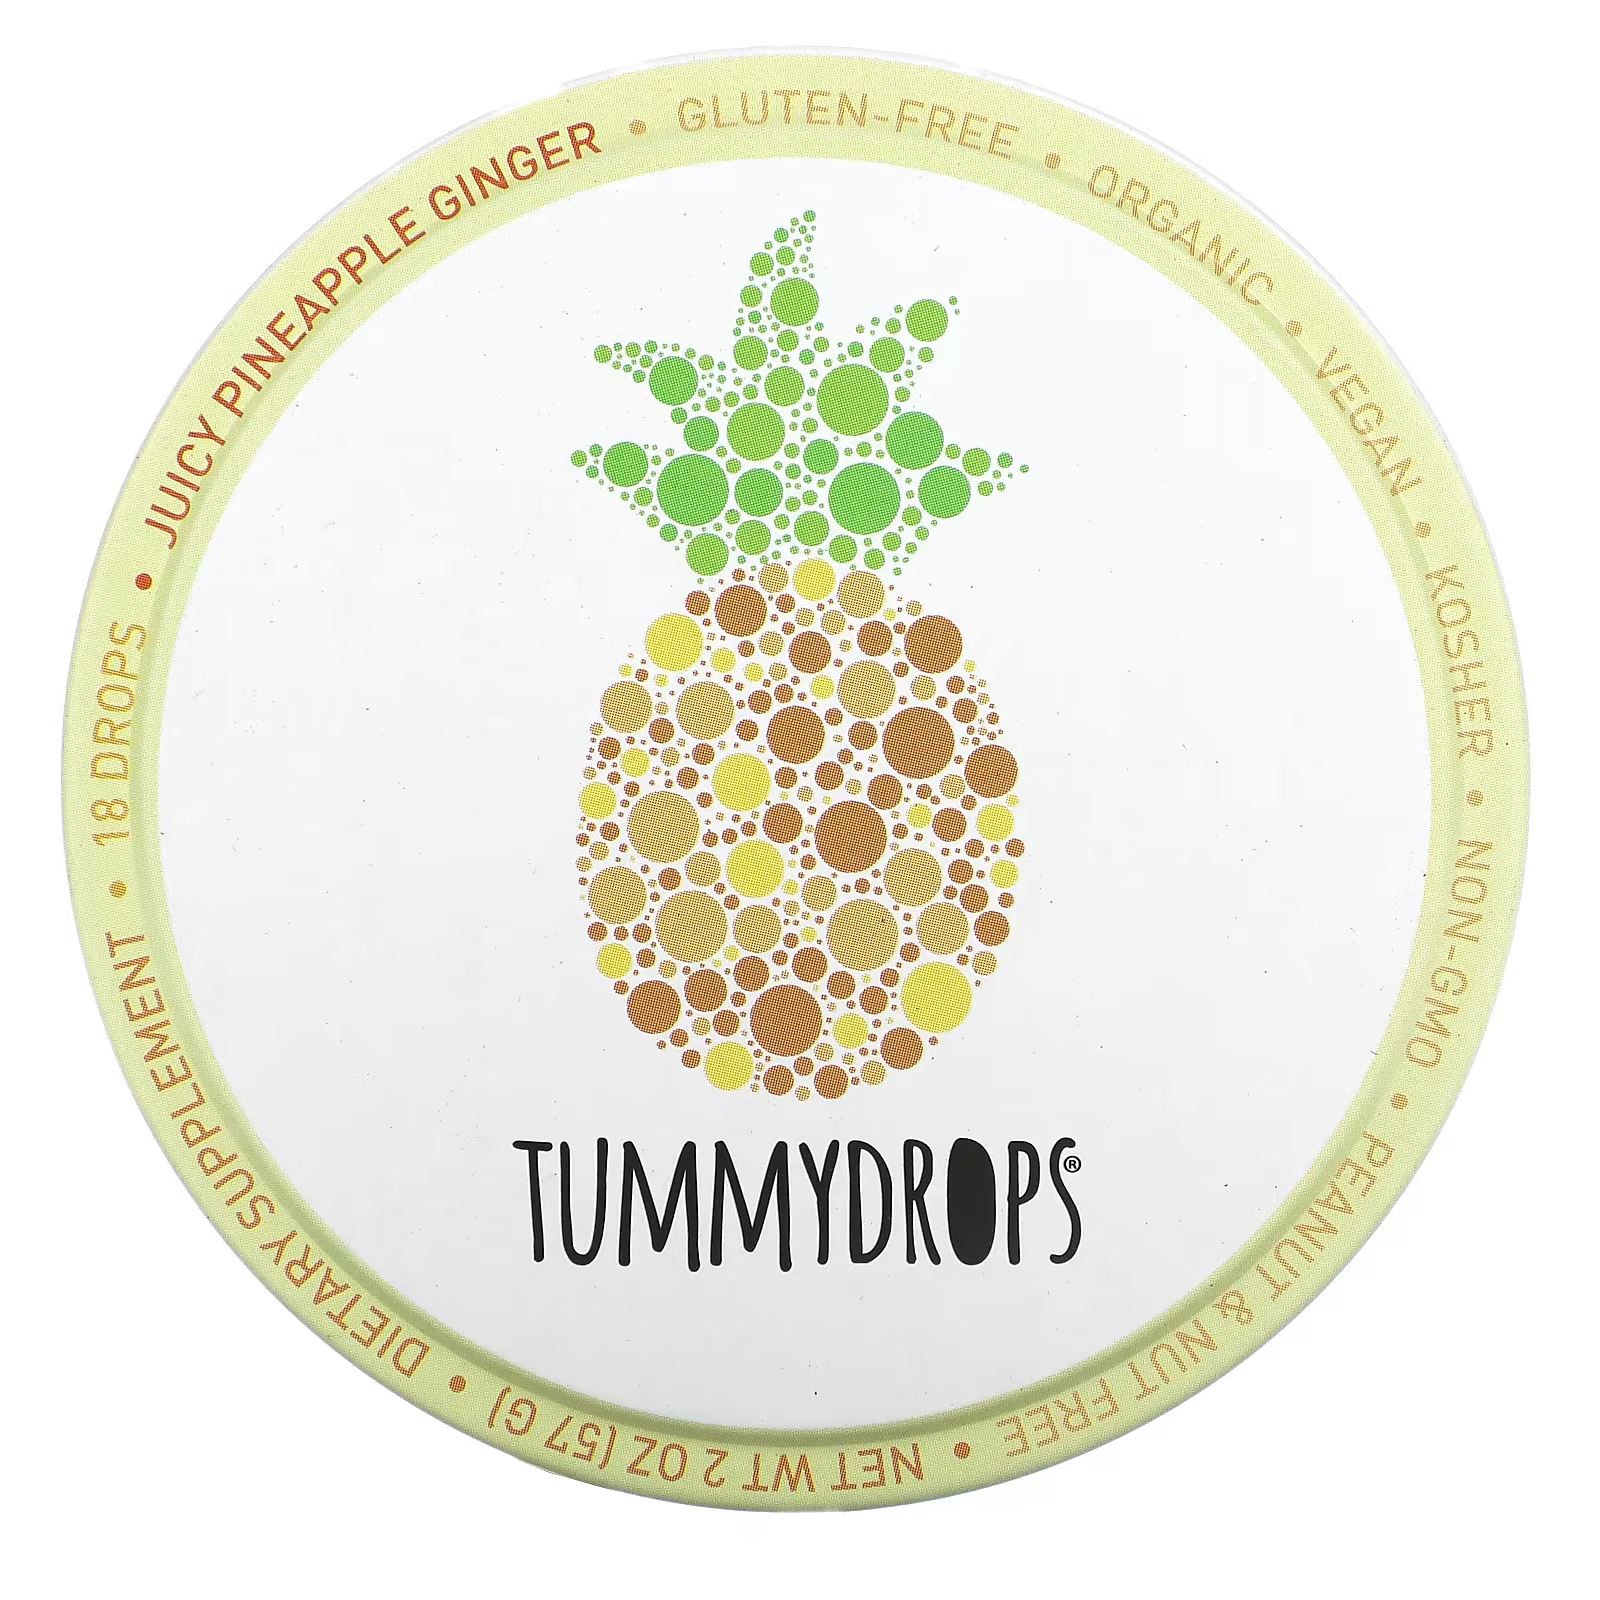 Капли имбирные Tummydrops ананасовые, 18 капель tummydrops пряный имбирь 18 капель 57 г 2 унции